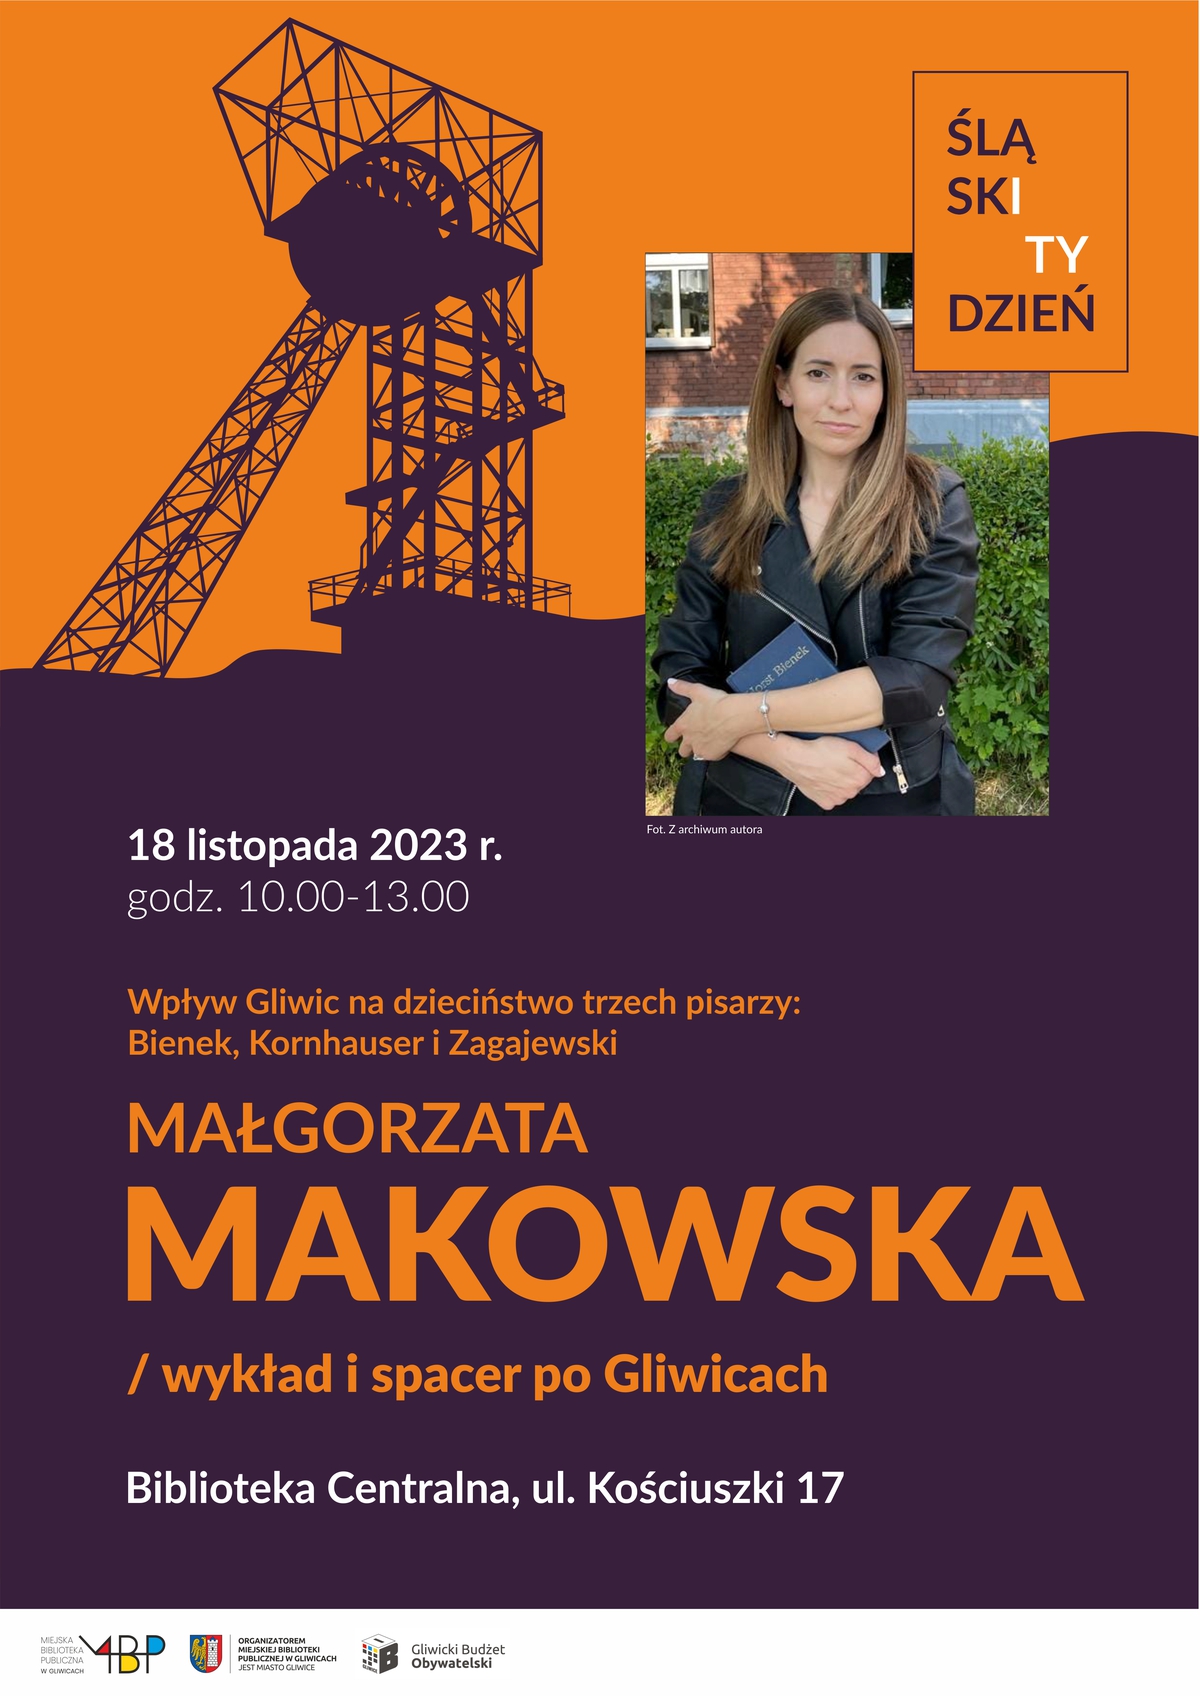 Plakat promujący spotkanie z Małgorzatą Makowską